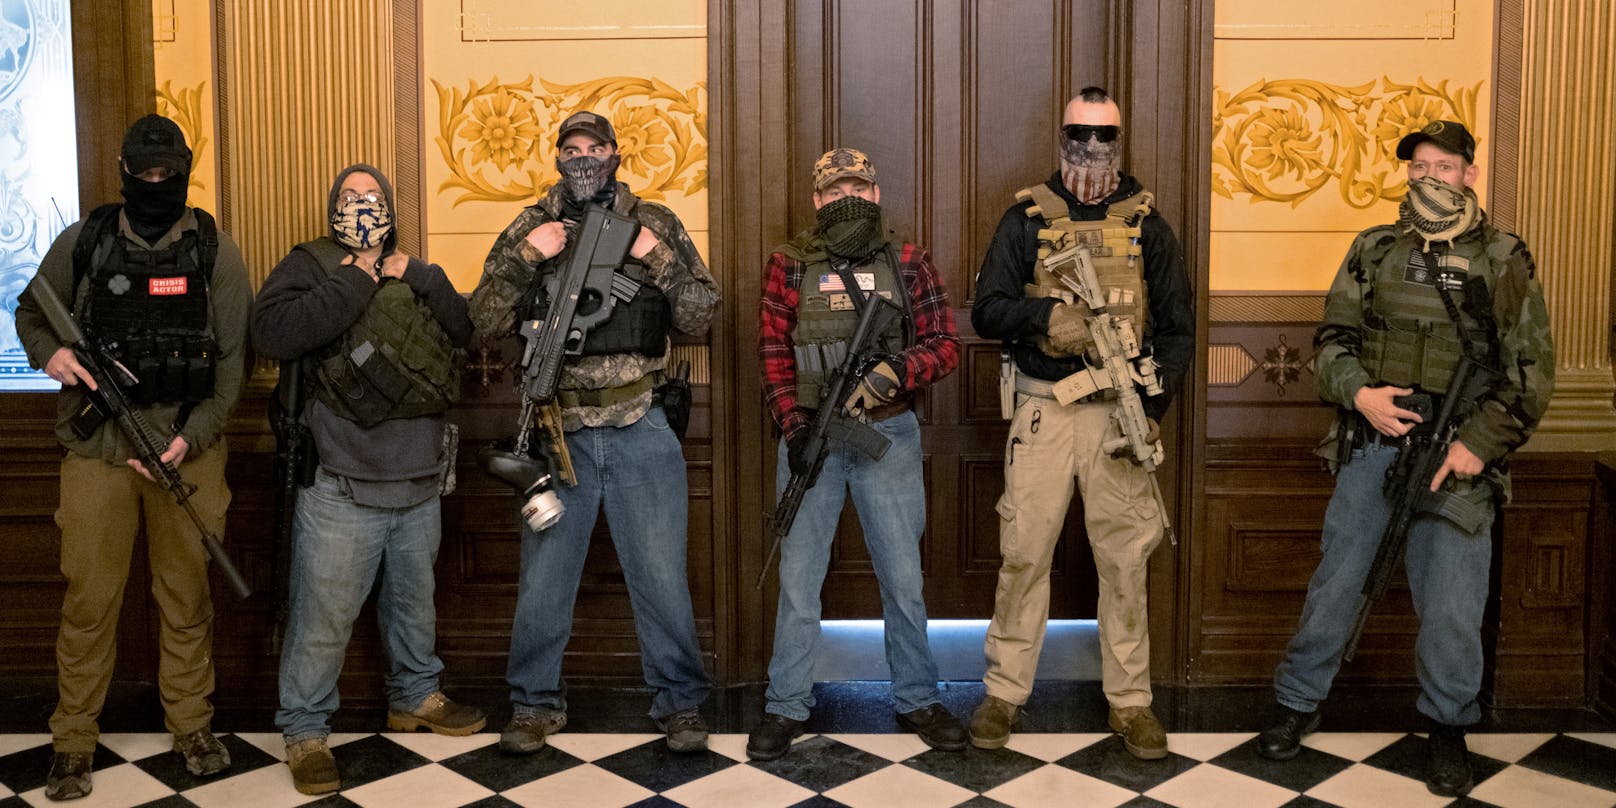 Die Festgenommenen standen in Verbindungen zu einer Miliz namens Wolverine Watchmen.